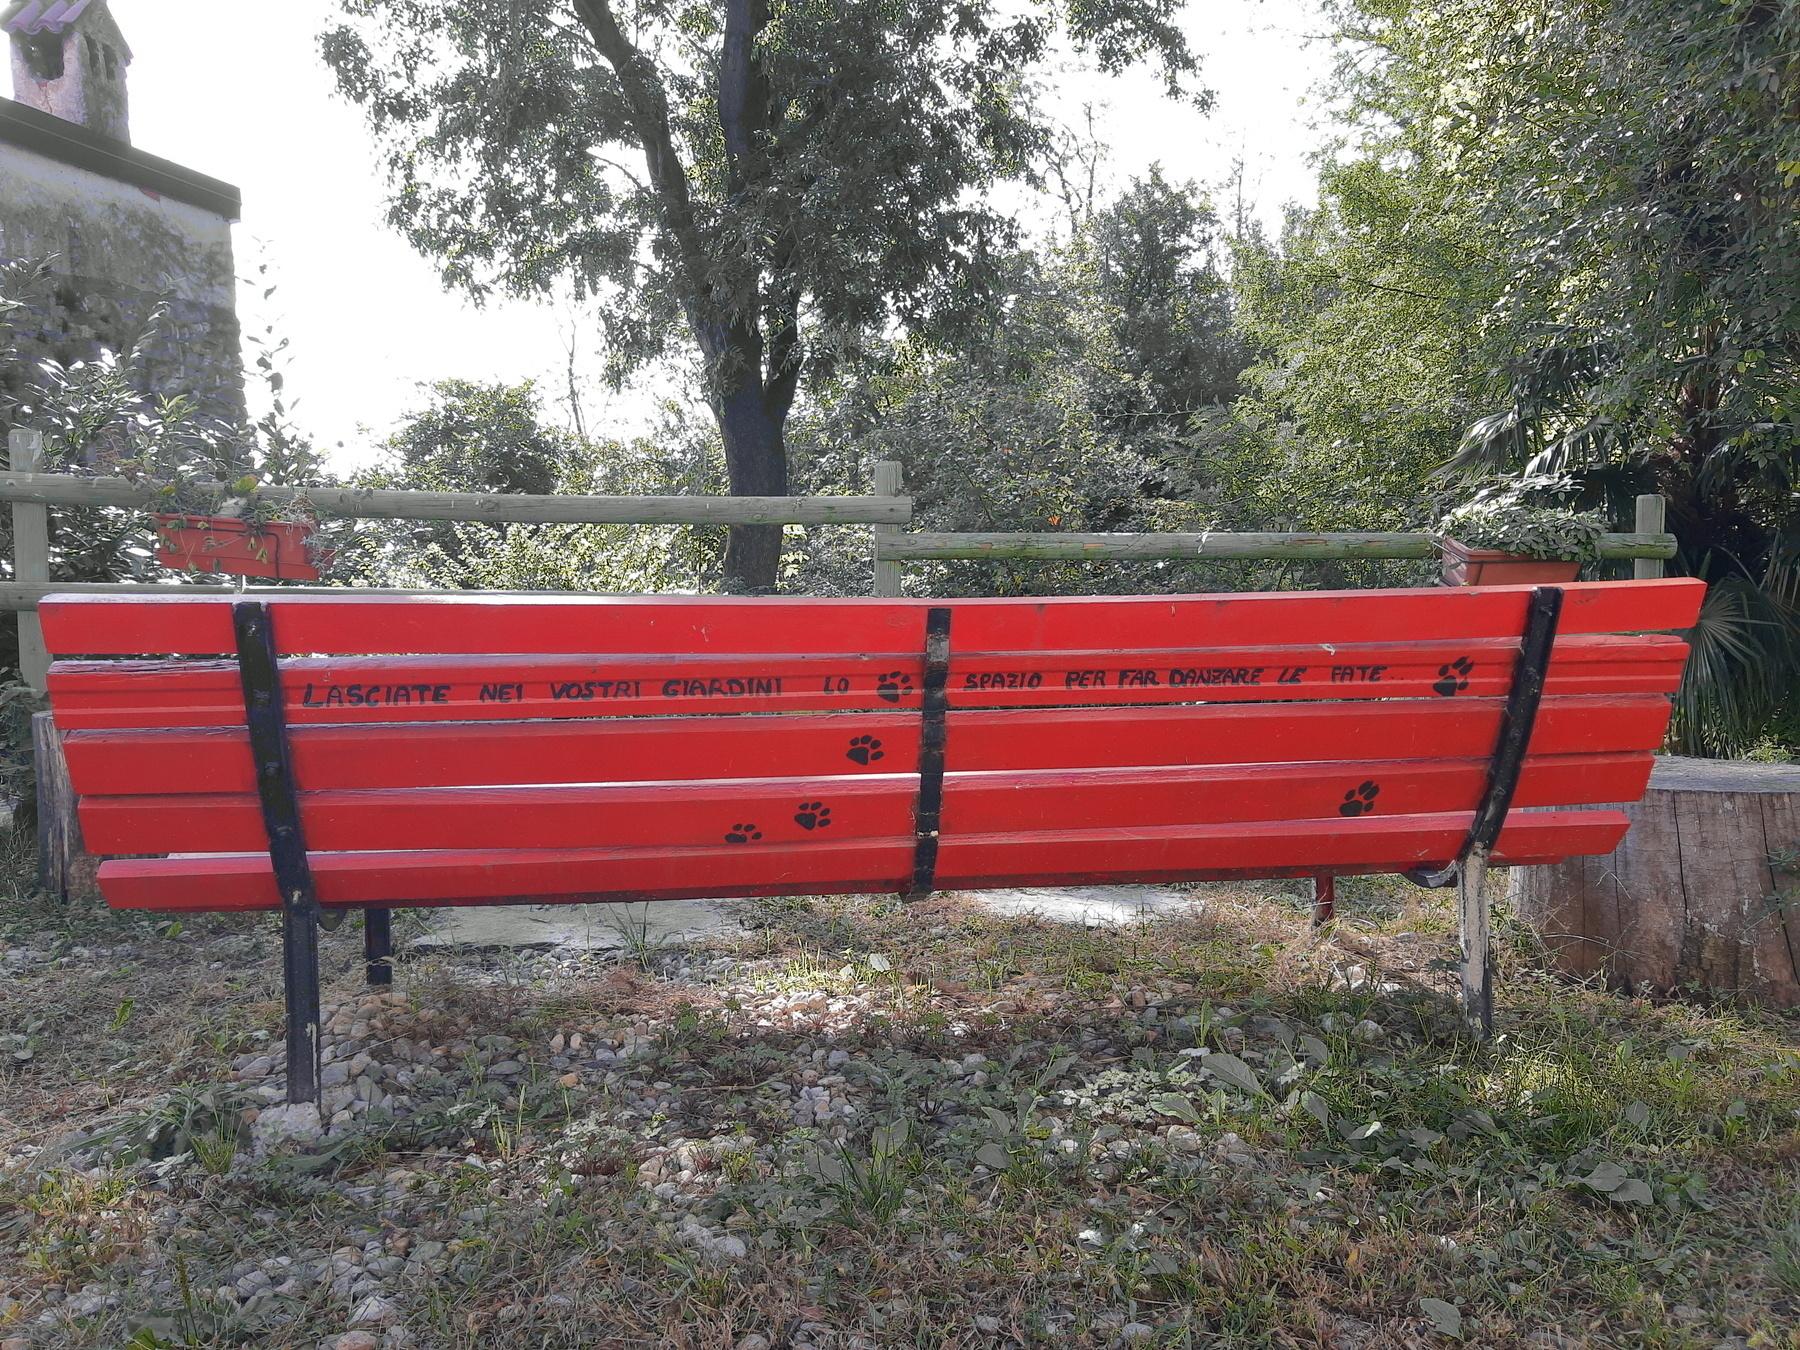 Panchina rossa con dietro una scritta: Lasciate nei vostri giardini lo spazio per far danzare le fate